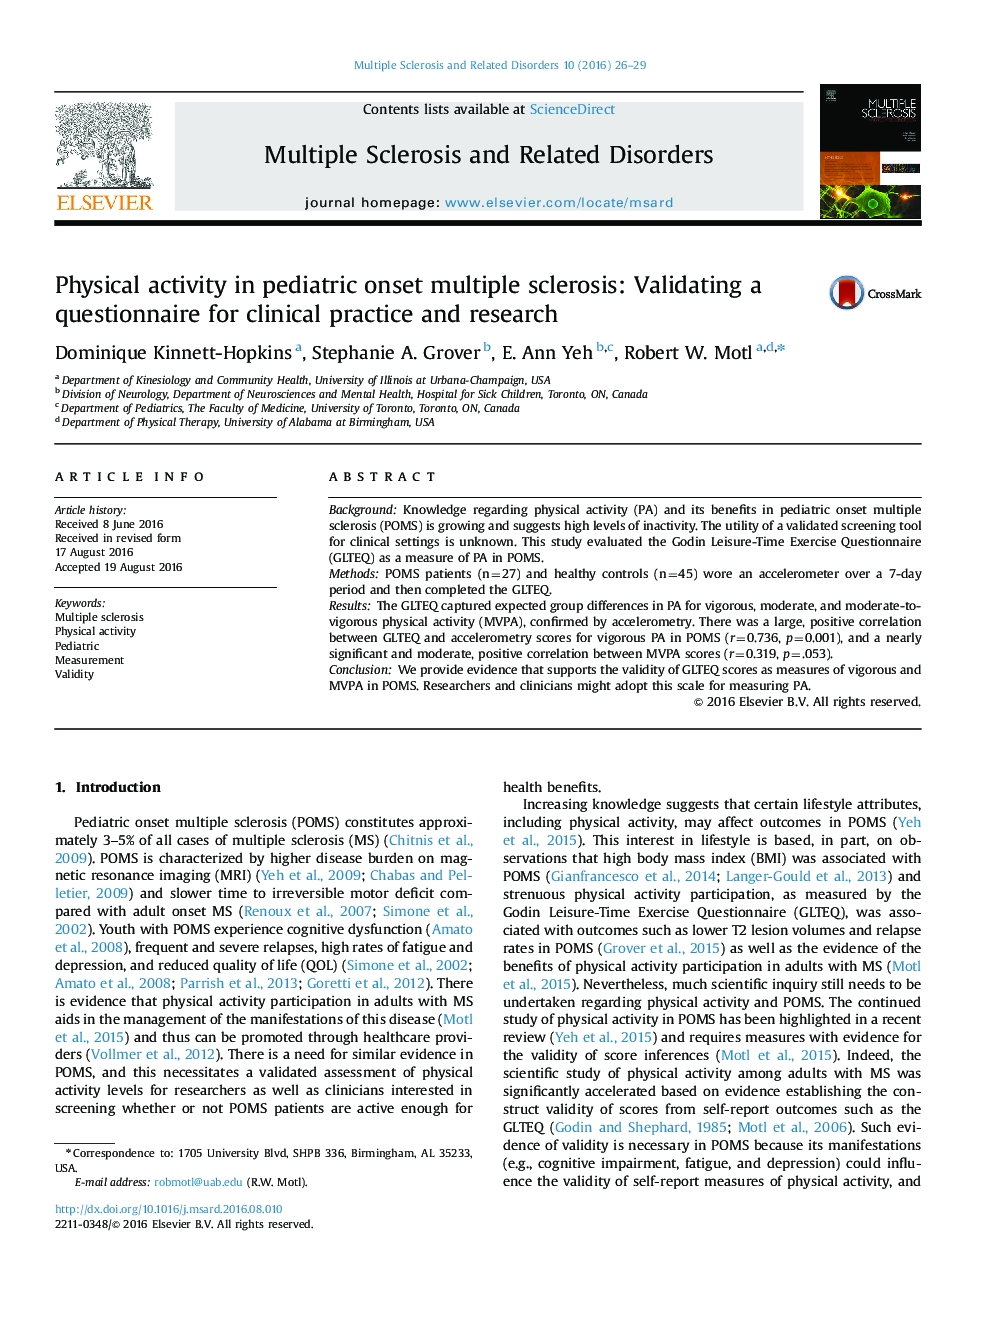 فعالیت بدنی در مبتلایان به مولتیپل اسکلروزیس در کودکان: اعتبارسنجی پرسشنامه برای عمل بالینی و تحقیقاتی 